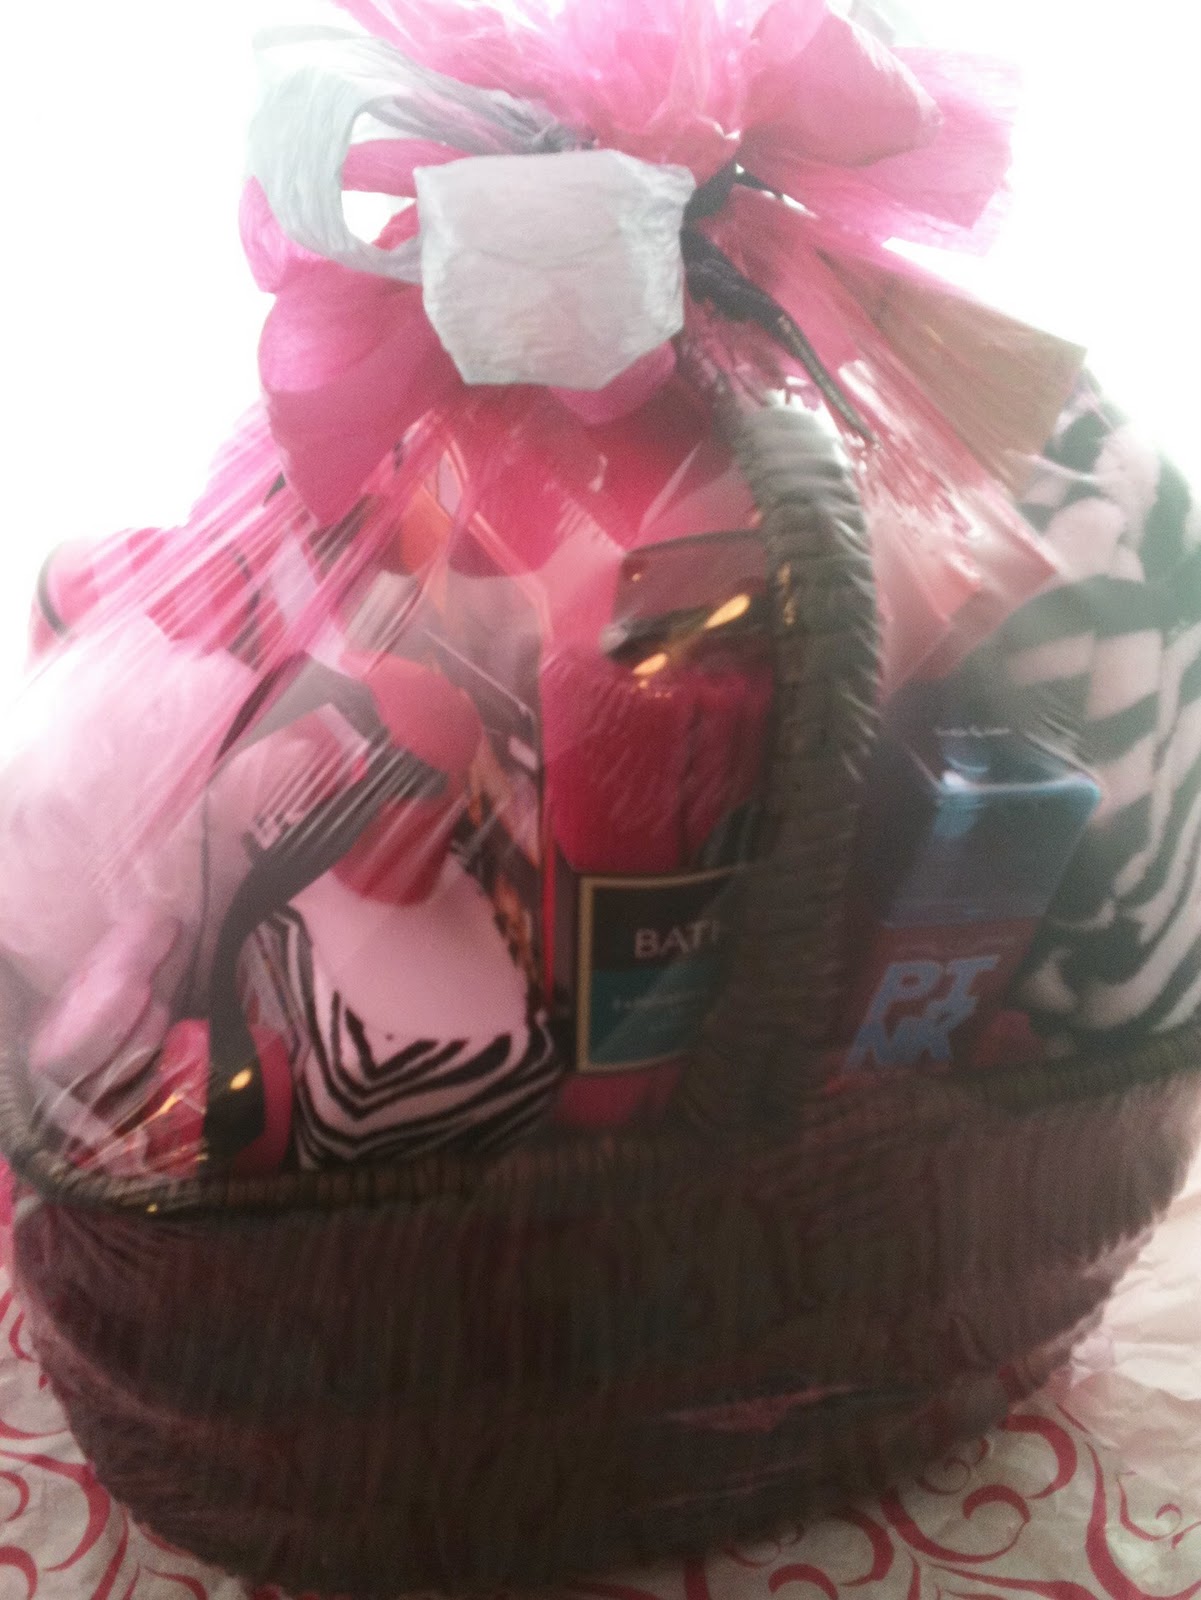 Quality Baskets Announcement s Victoria Secret Gift